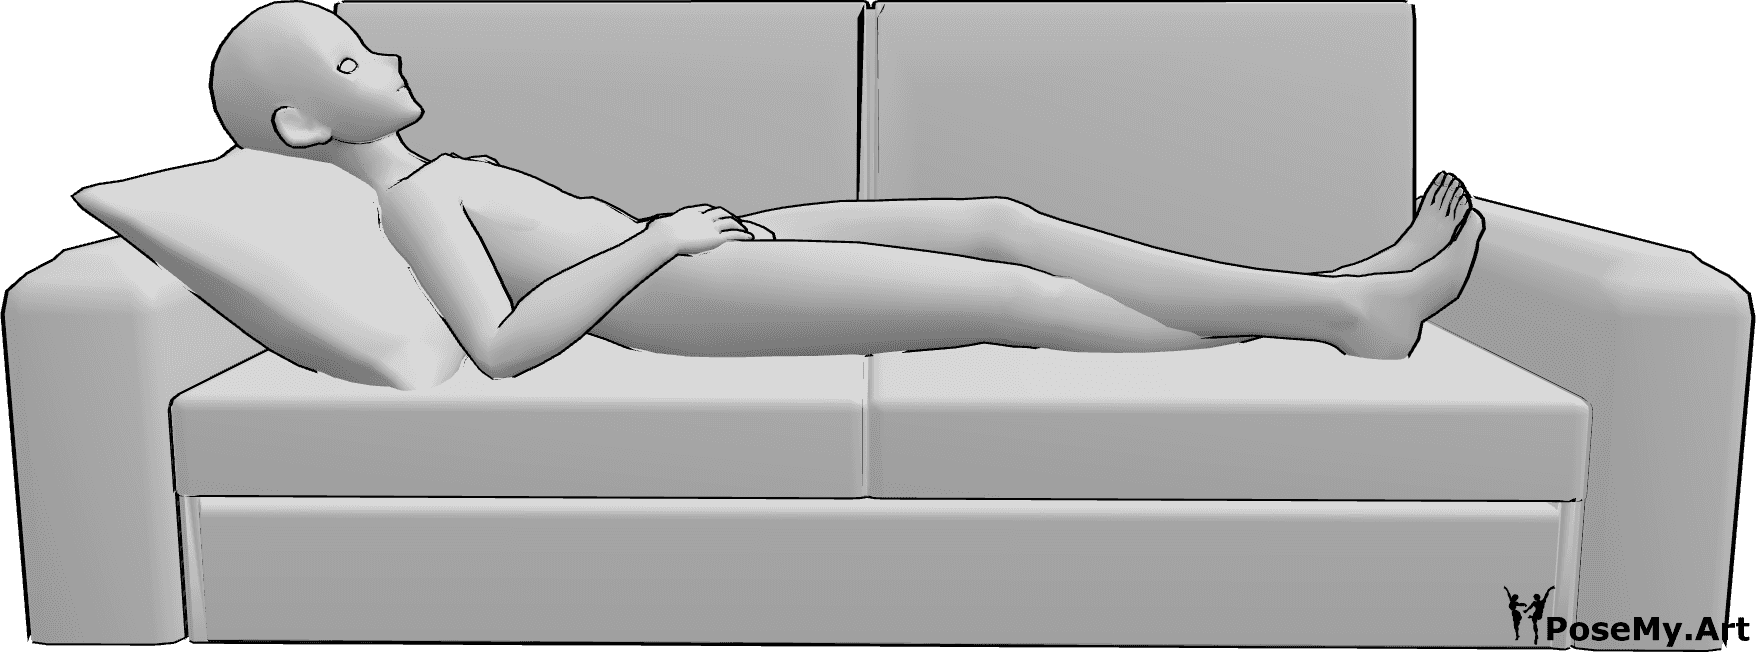 Referencia de poses- Anime masculino tumbado pose - El macho anime está cómodamente tumbado en el sofá con las piernas cruzadas y mirando hacia arriba